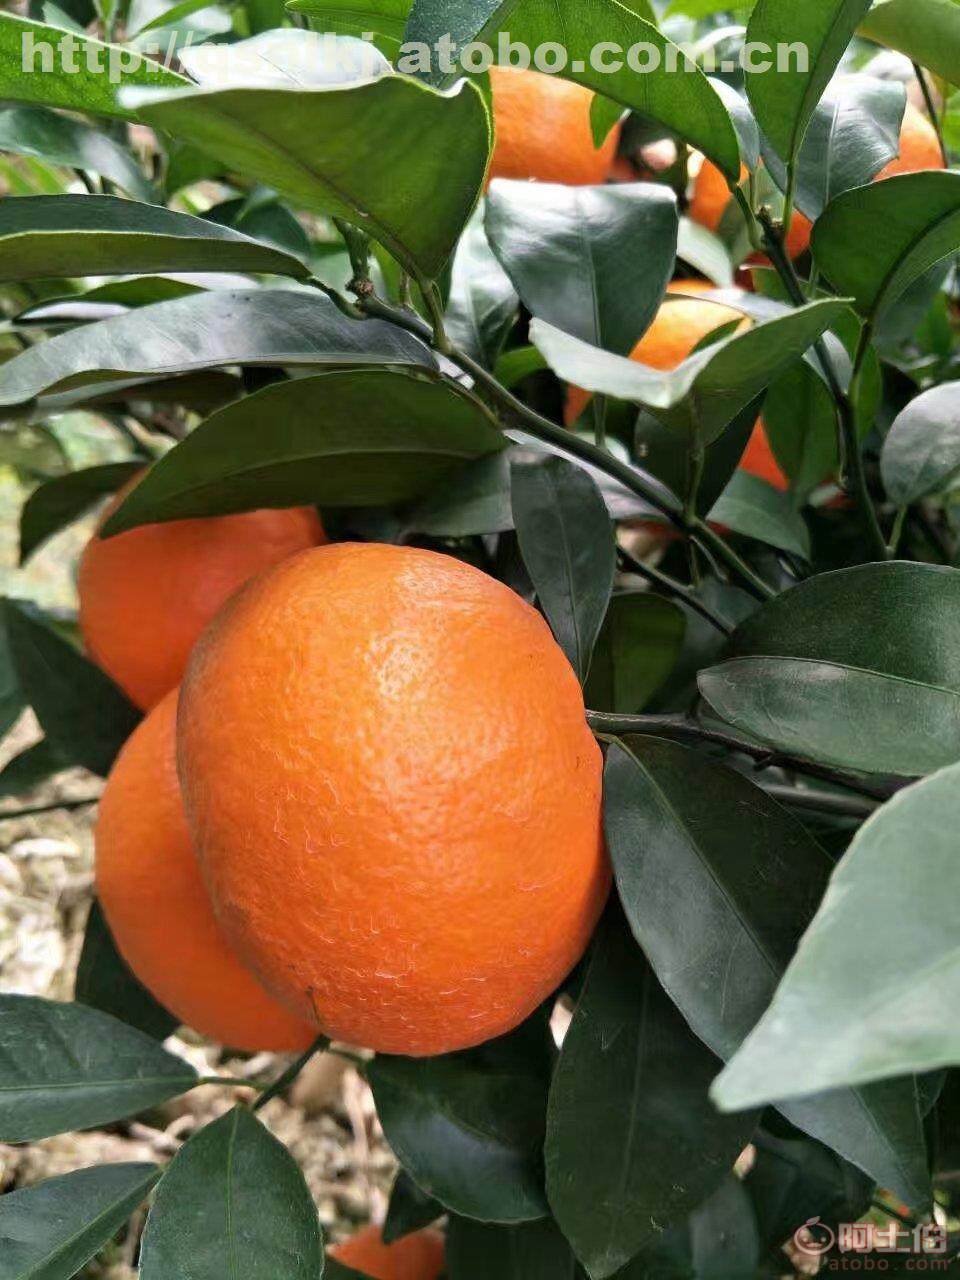 湖南沃柑种植近两年行情较好 供应香橙砧木沃